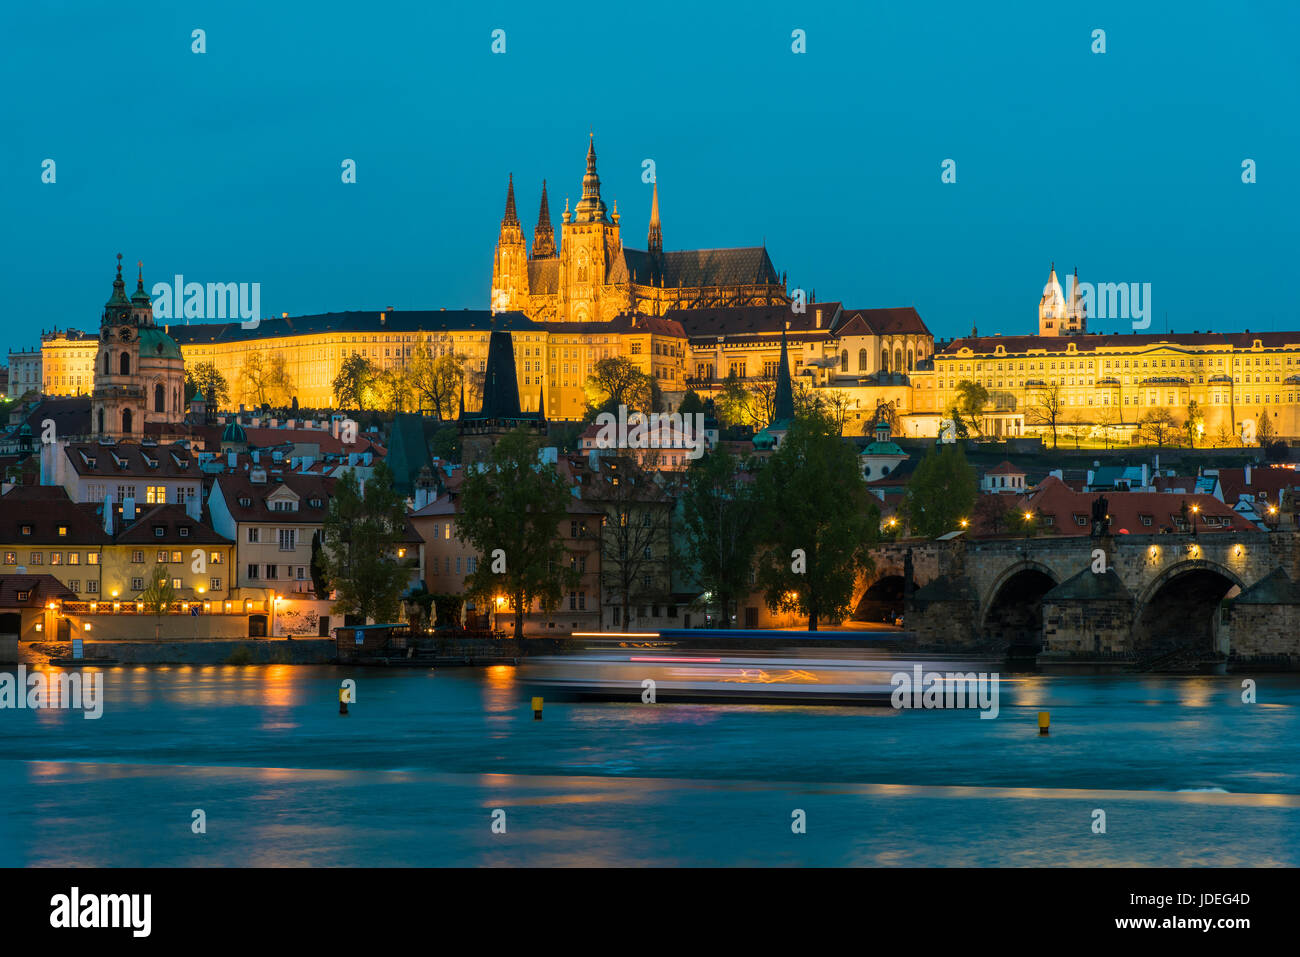 Vue nocturne du quartier de Mala Strana avec la cathédrale Saint-Guy et du château de Prague, Prague, Bohême, République Tchèque Banque D'Images